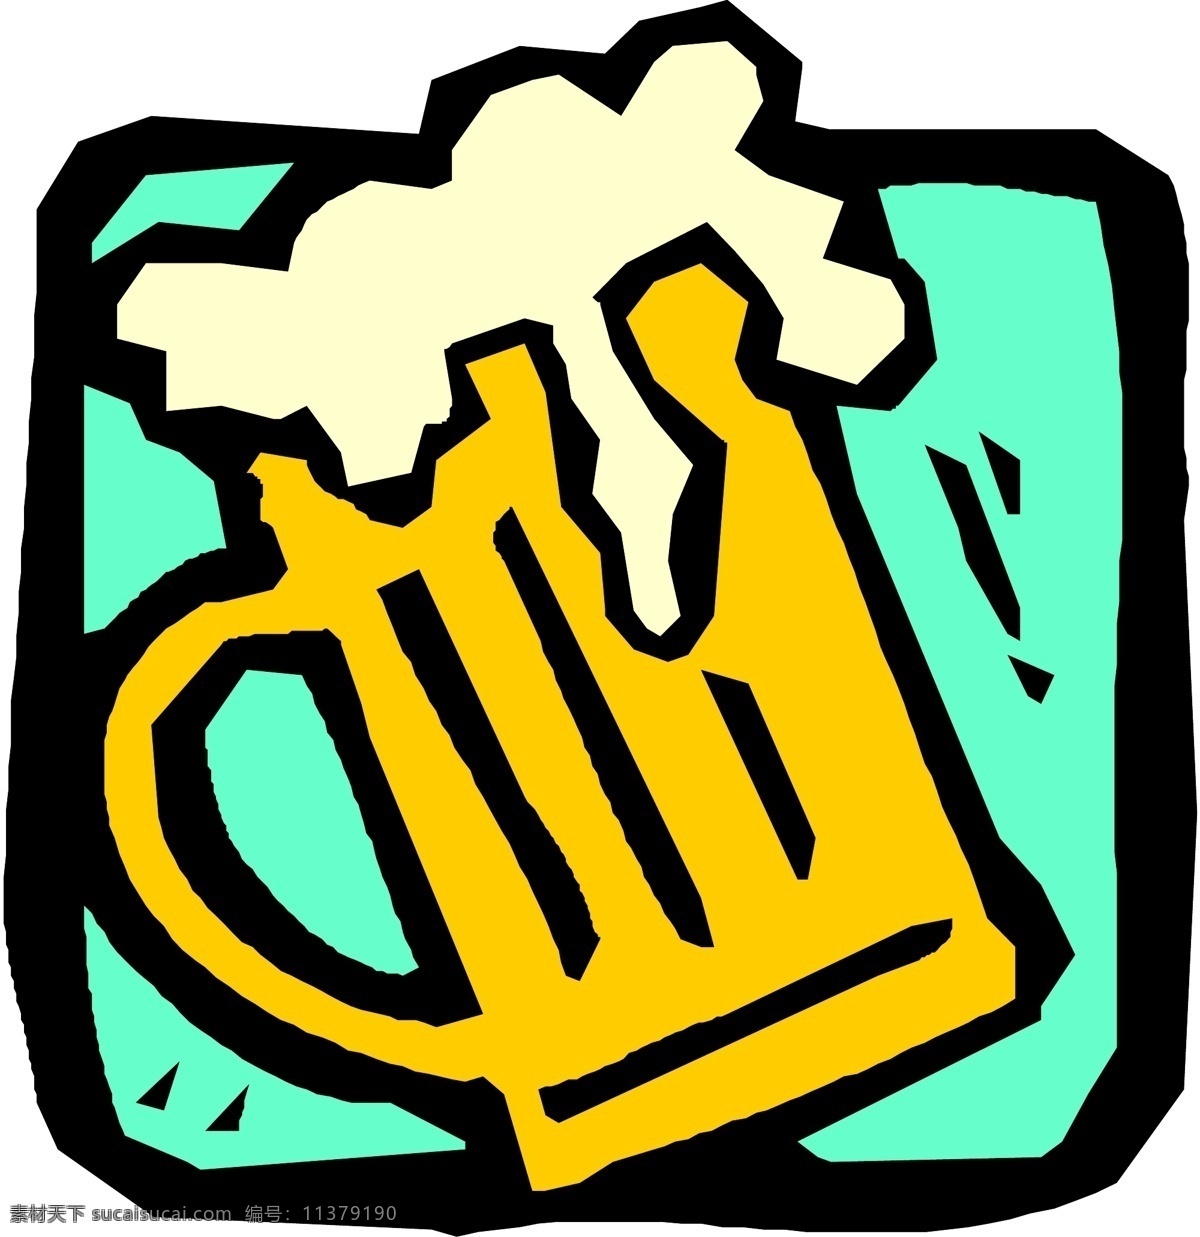 扎啤杯 矢量图 啤酒 啤酒杯 啤酒素材 啤酒图片 日常生活